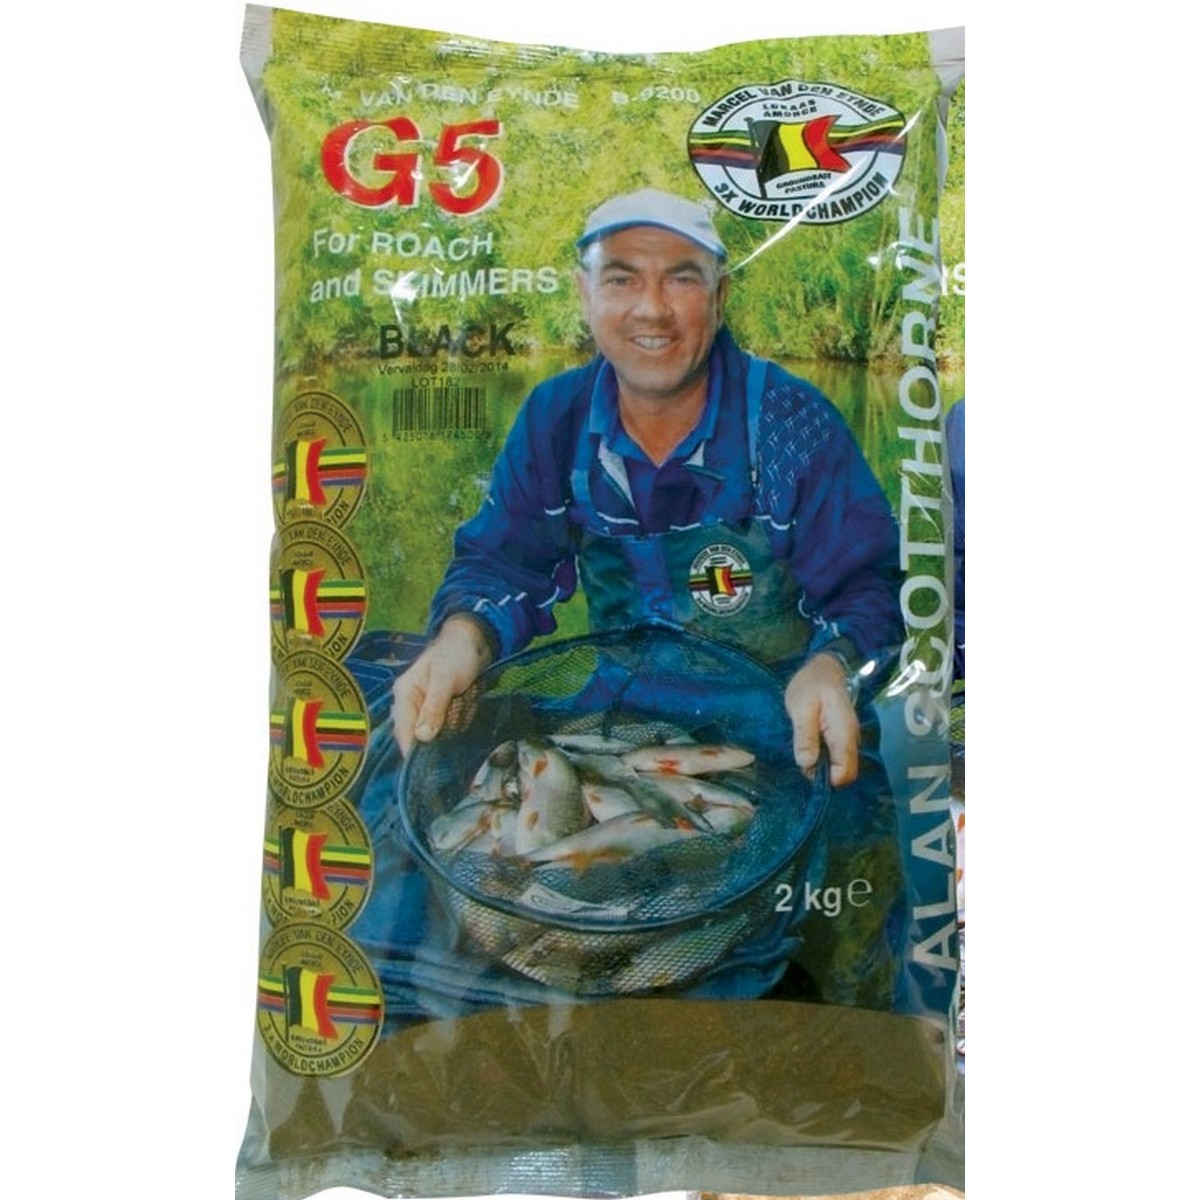 Захранка за риболов G5 Black Scotthorn 2kg - Van Den Eynde